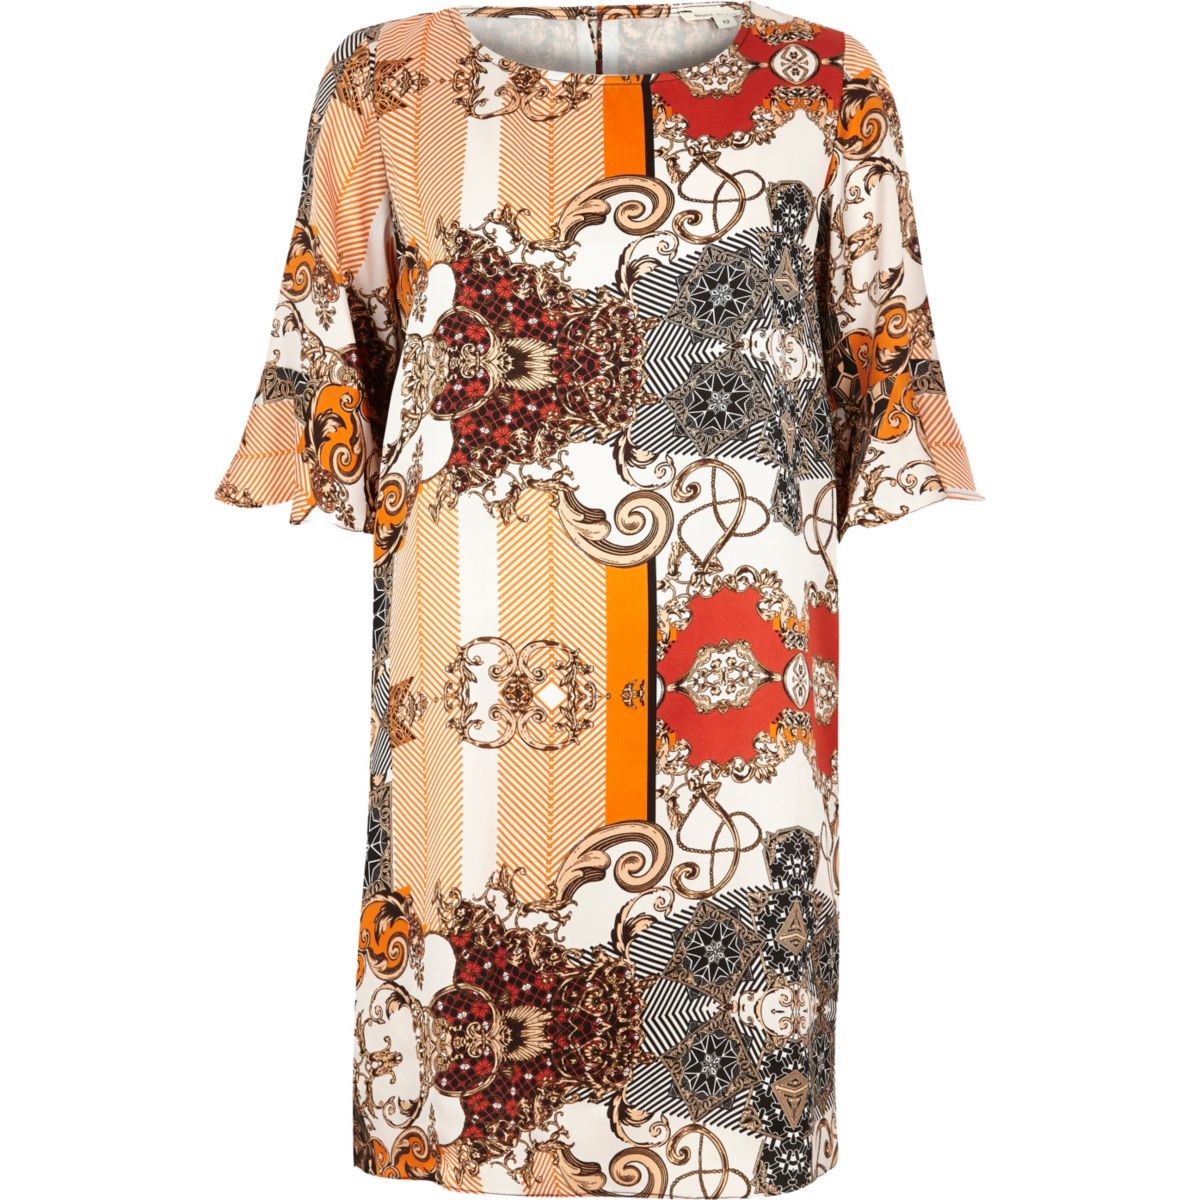 Orange print frill sleeve swing dress - Seasonal Offers - Sale - women